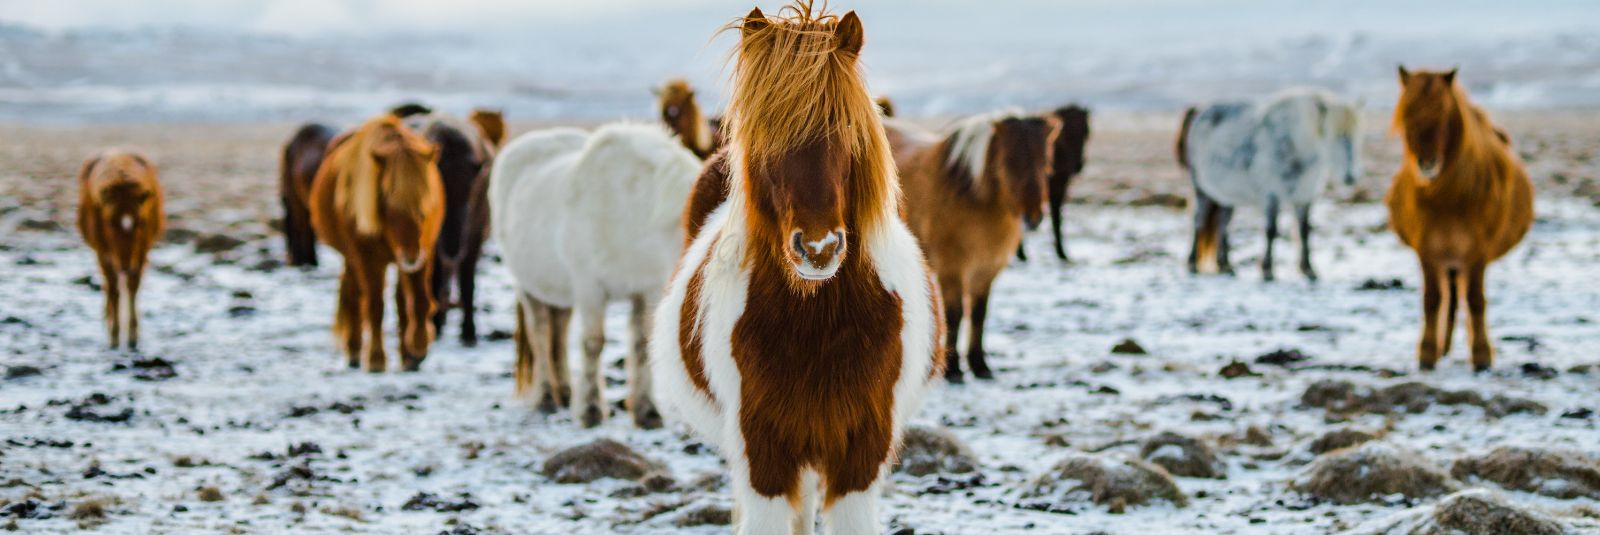 Hobutreileri sõit võib olla nii hobuseomanikule kui ka loomadele stressirohke kogemus, eriti kui teekond on pikk või kui hobune pole varem sarnases olukorras ol